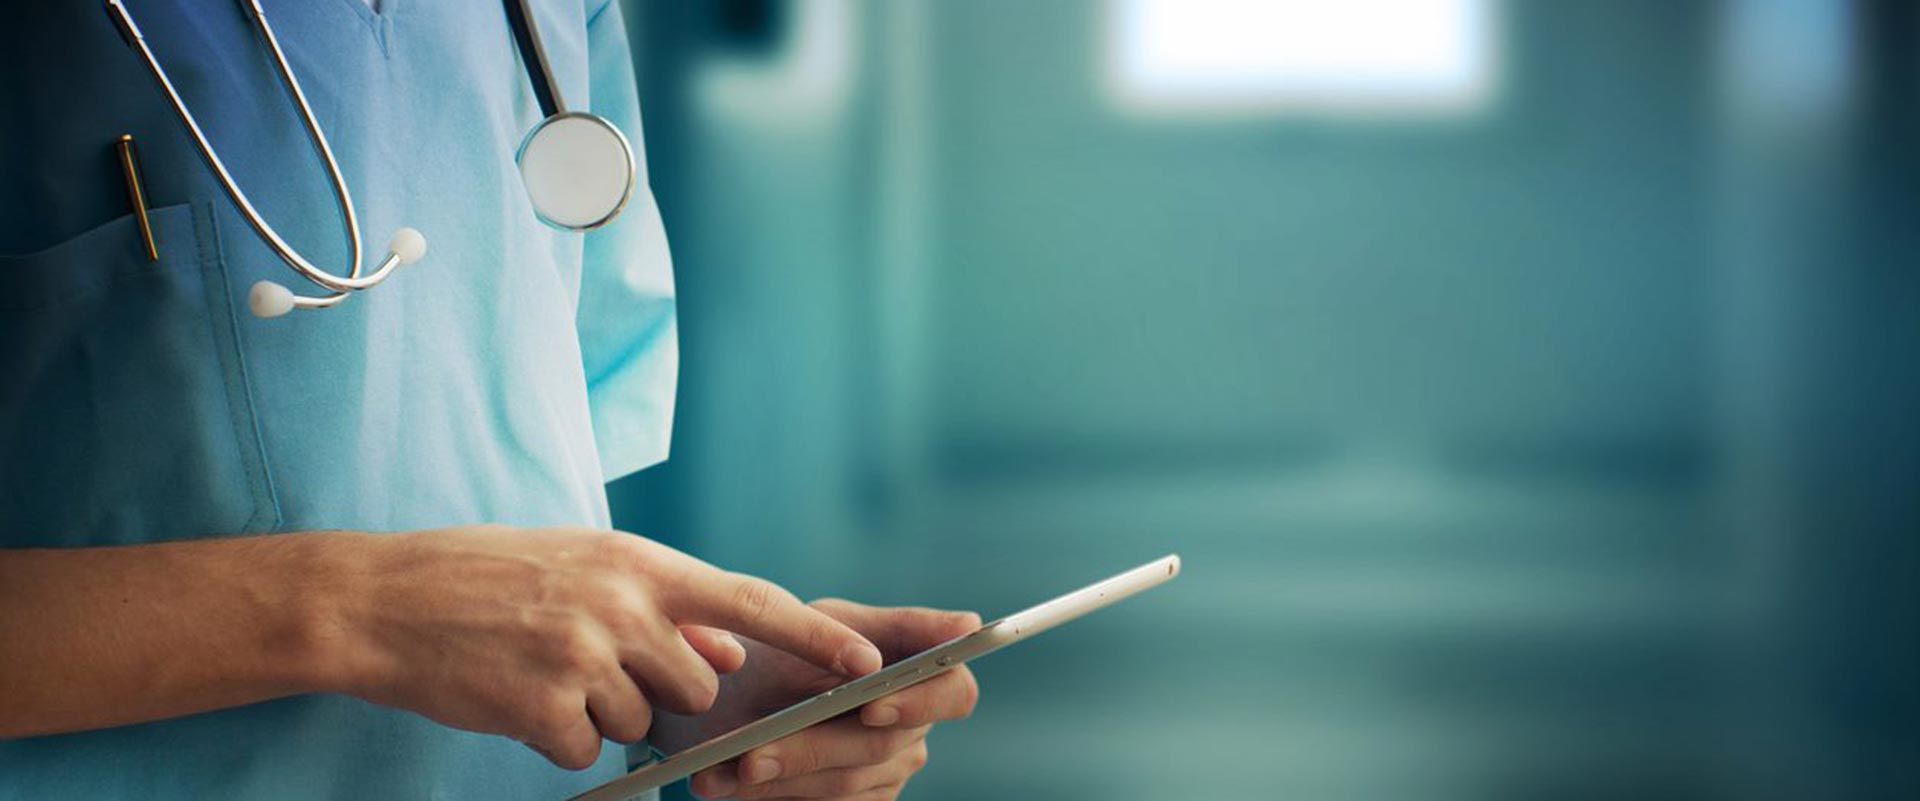 Durch die Nutzung von Daten gewinnen Krankenhäuser Insights, die sich positiv auf die Patientenversorgung auswirken kann.